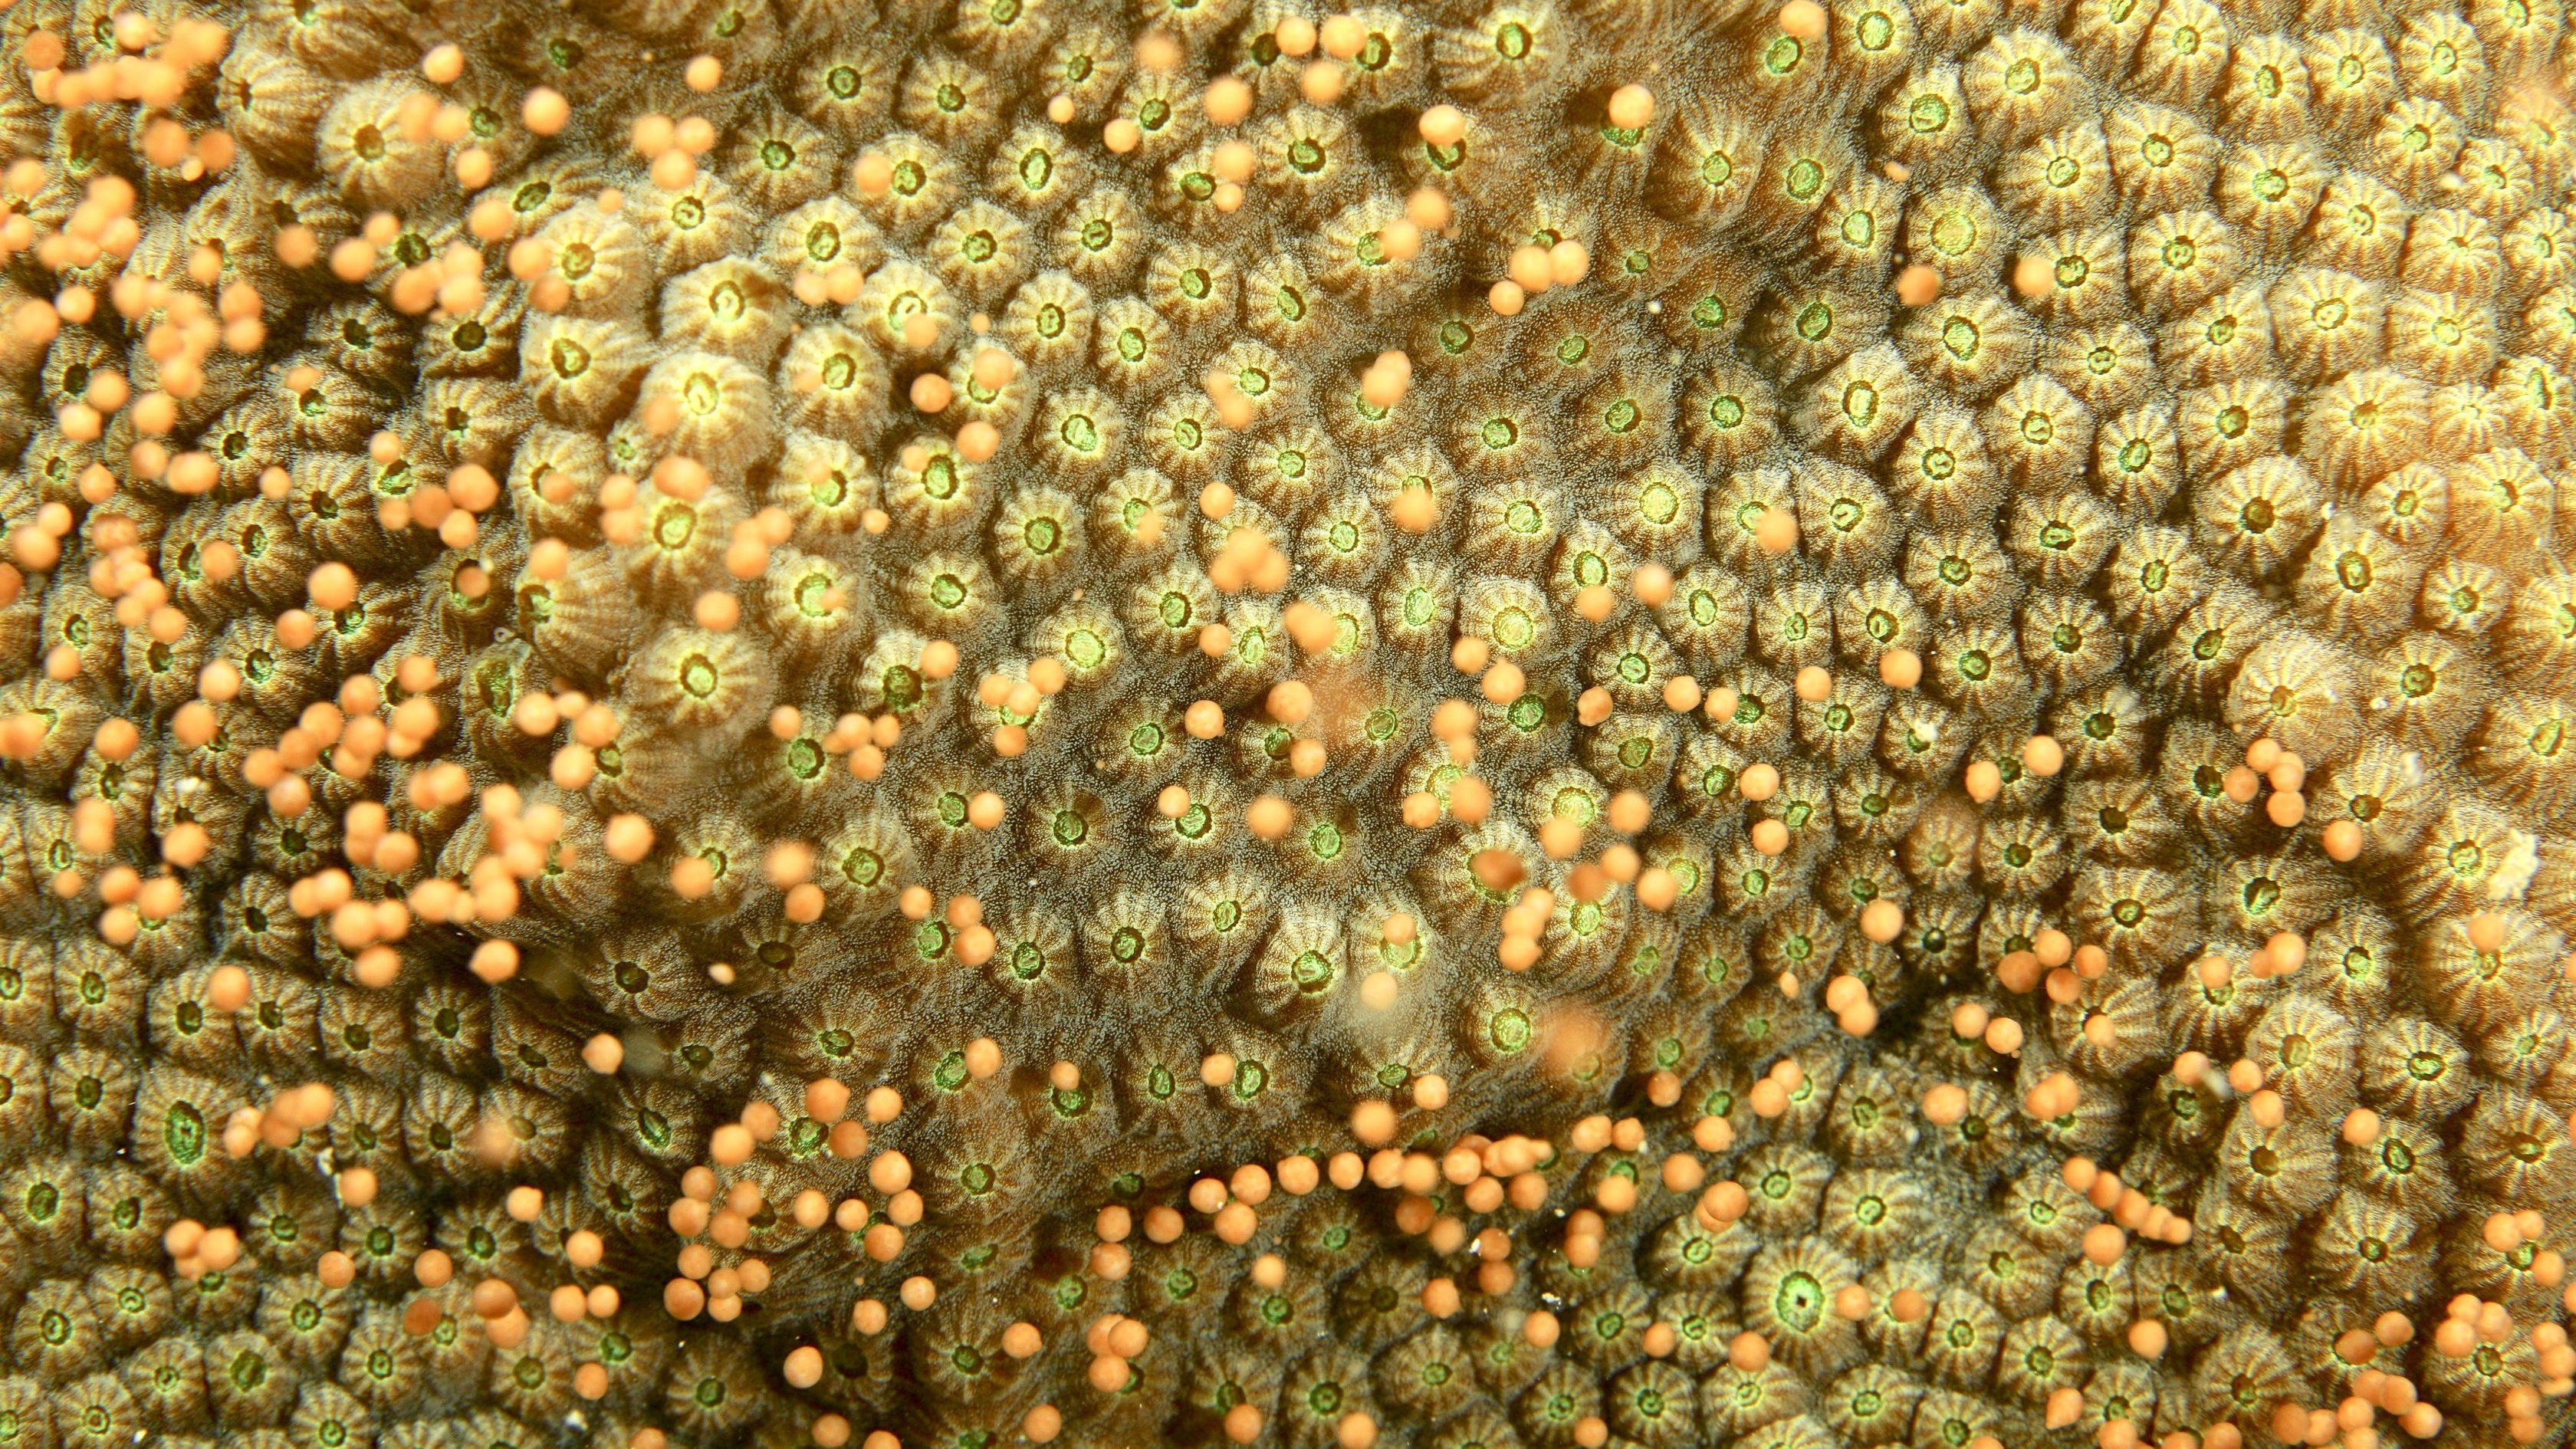 Foto de la colonia de O. faveolata liberando fardos de gameto sincrónicamente aproximadamente 3.5 horas después del atardecer